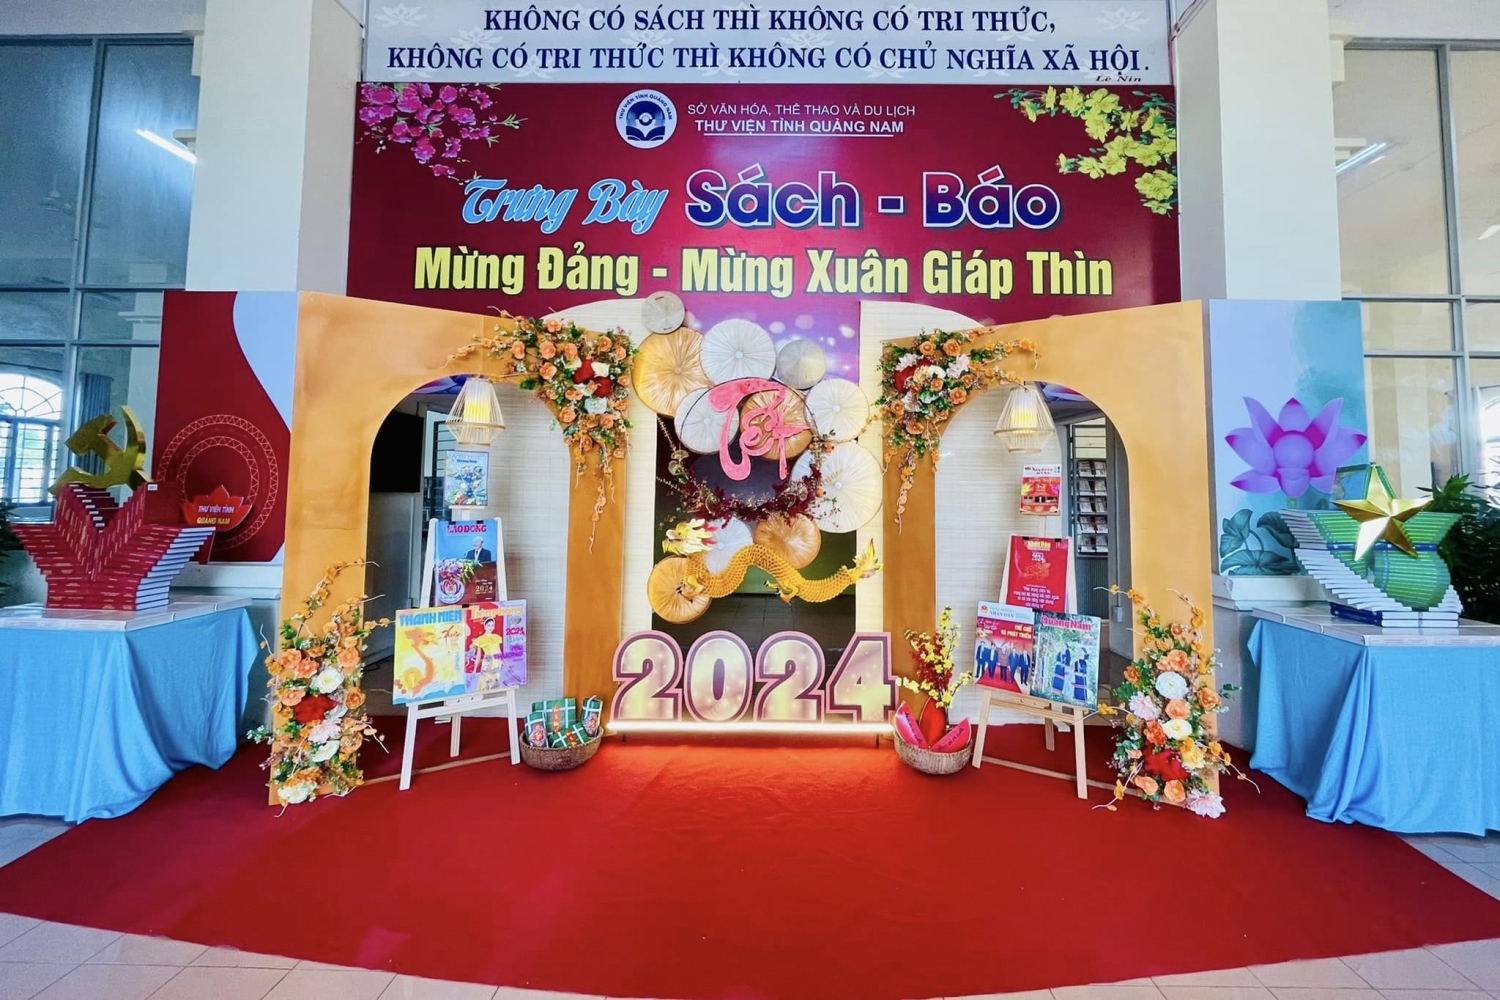 Thư viện tỉnh Quảng Nam trưng bày sách - báo mừng Đảng, mừng Xuân Giáp Thìn 2024